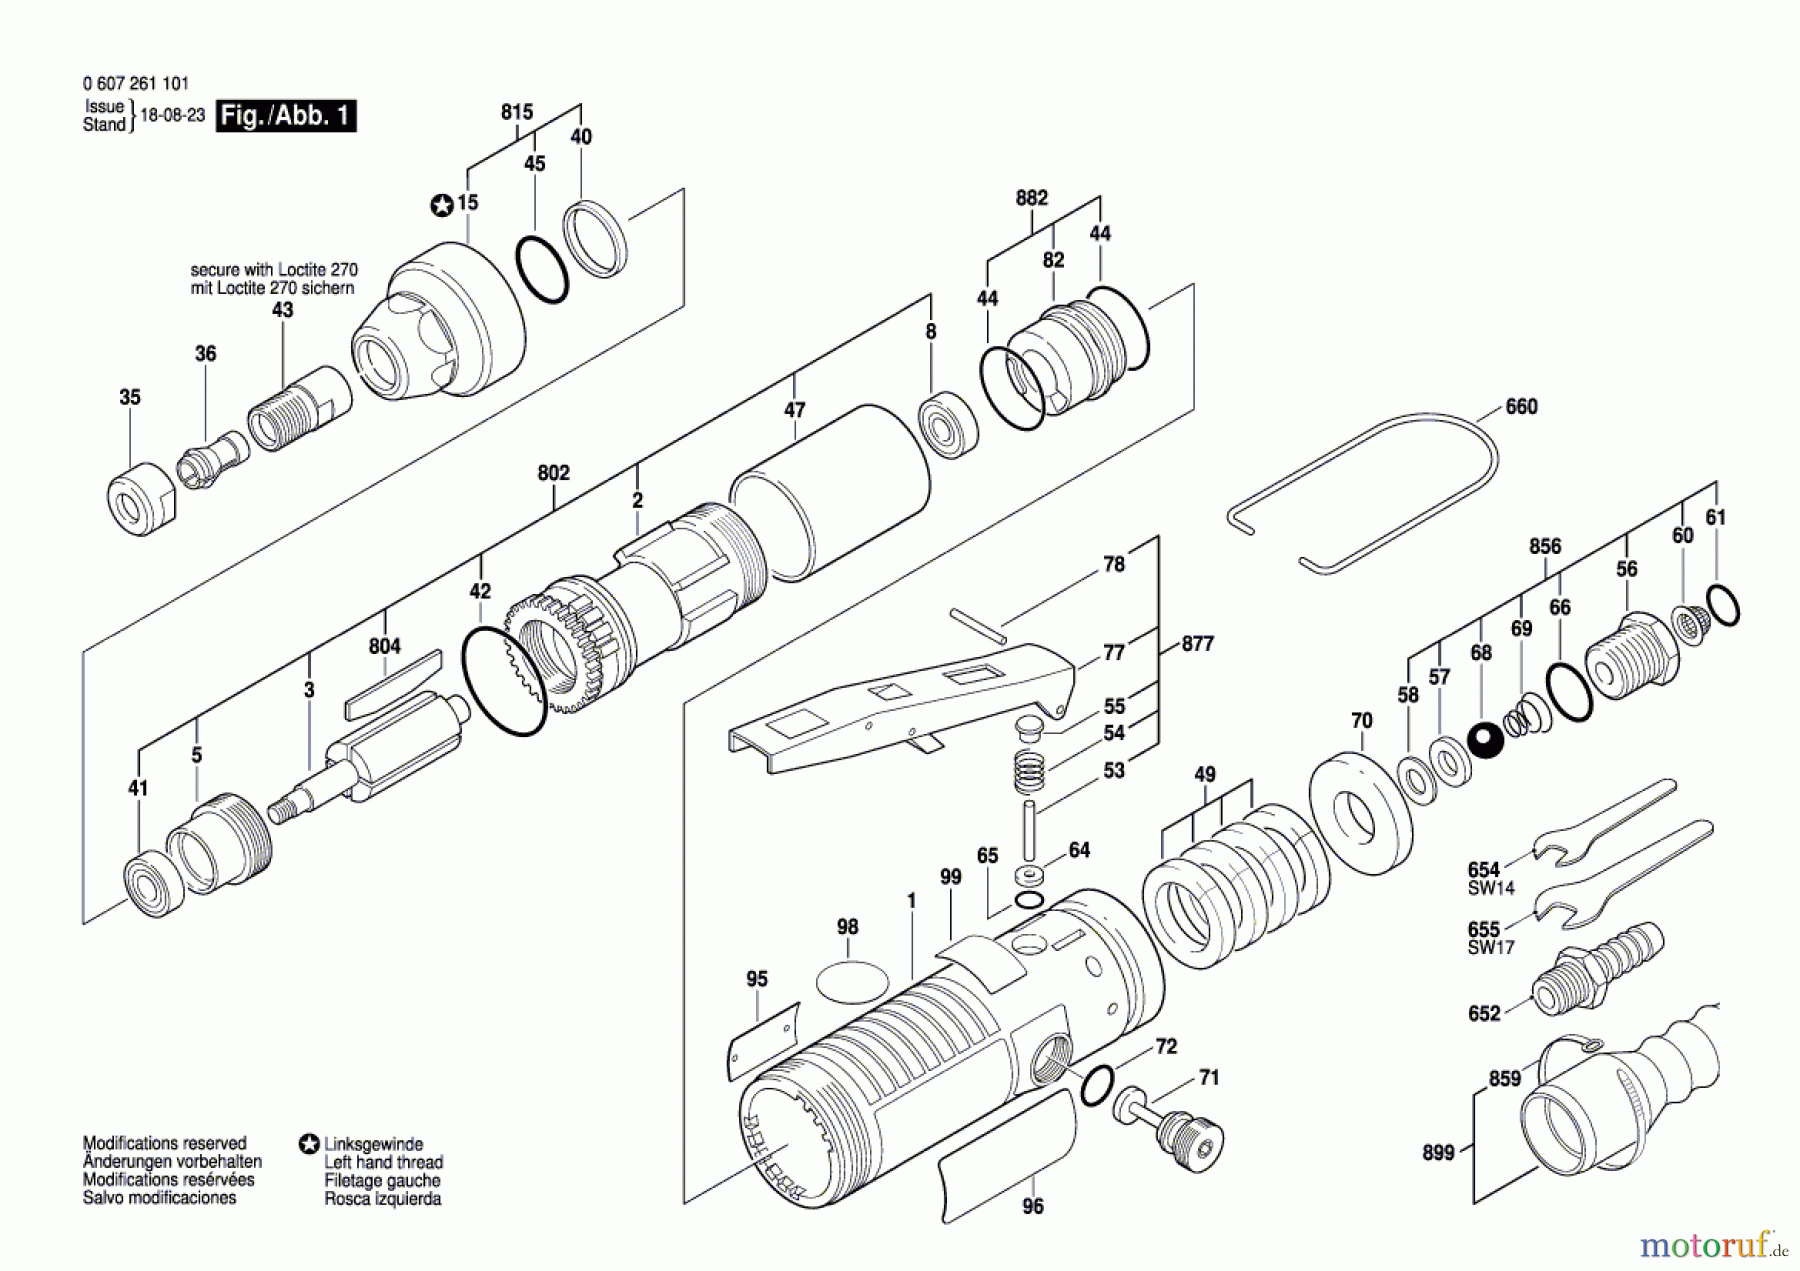  Bosch Werkzeug Pw-Geradschleifer 400 WATT-SERIE Seite 1